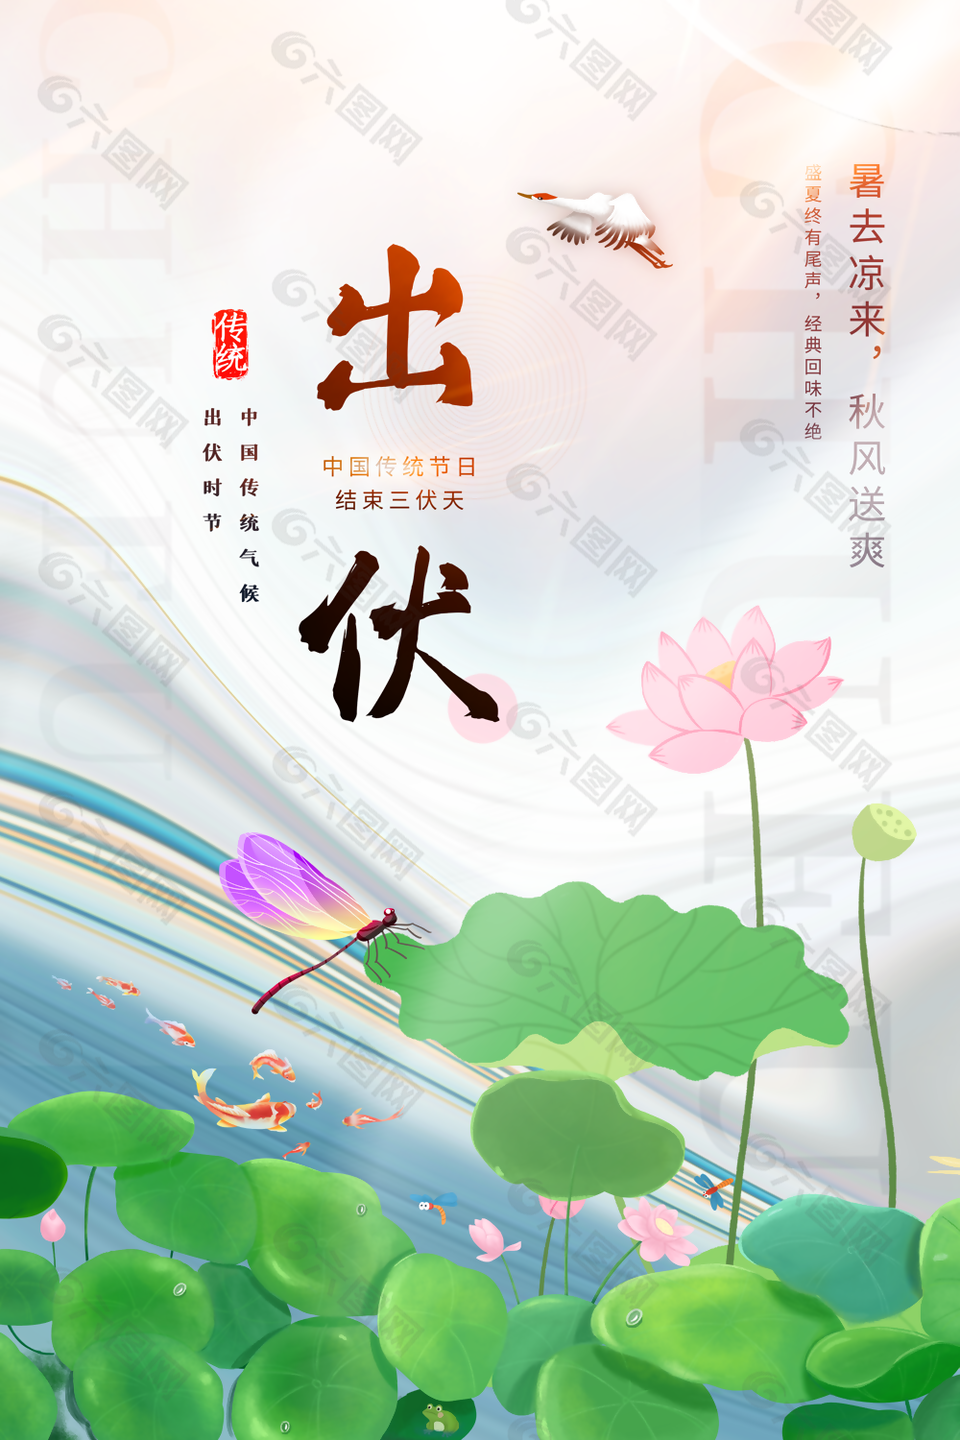 清新简约中国风传统节气出伏宣传海报图设计